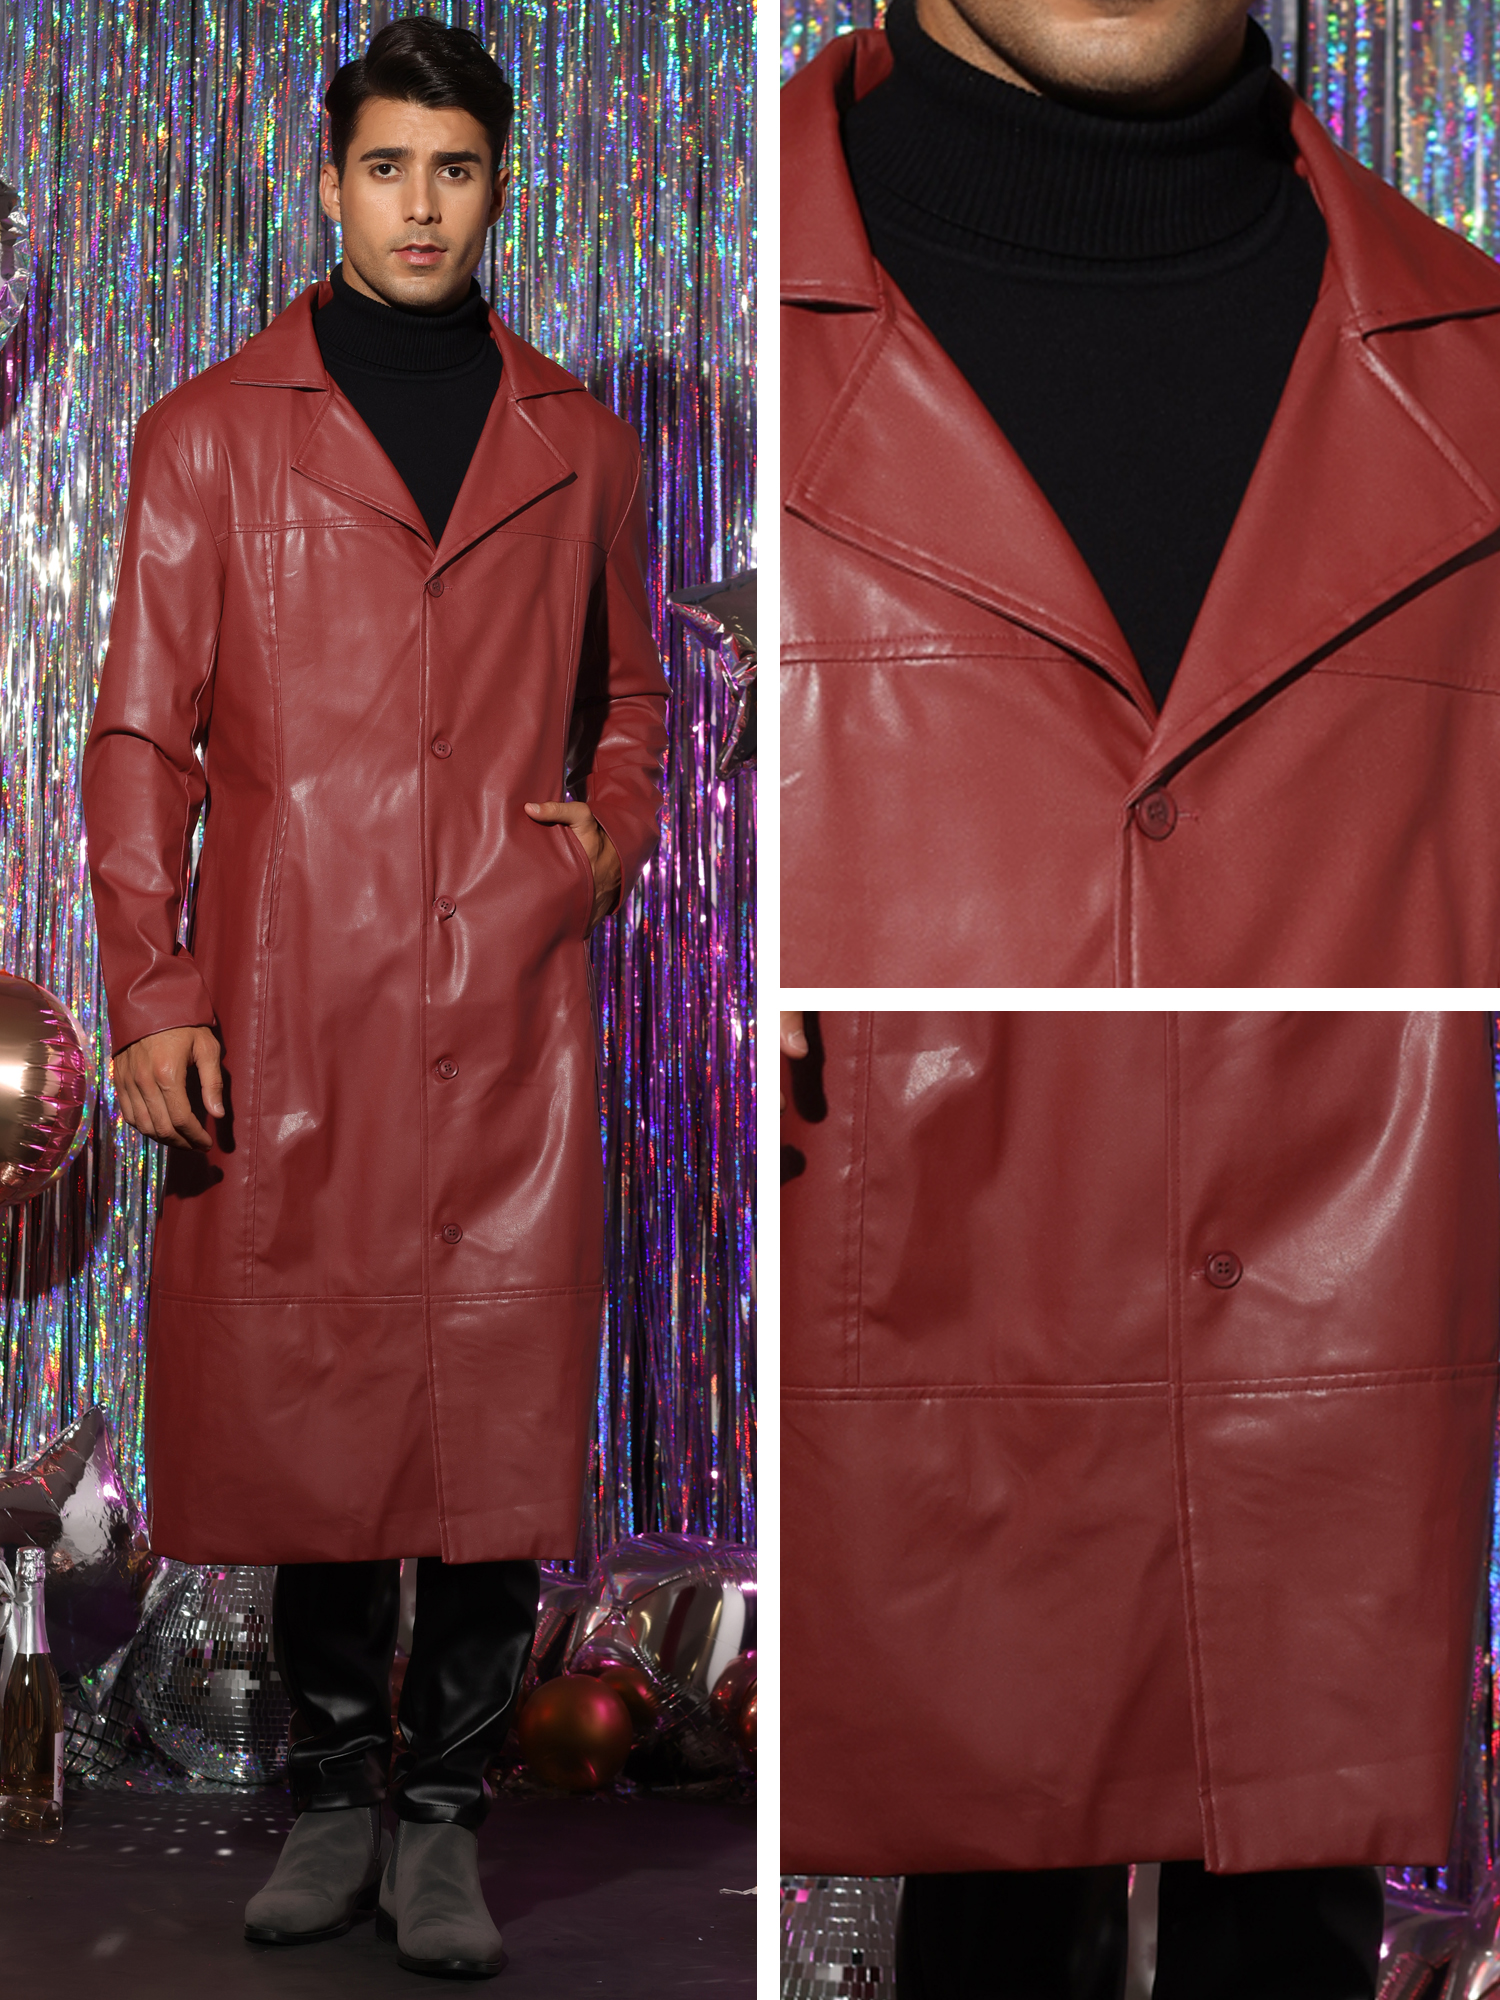 Unique Bargains PU Faux Leather Long Jacket for Men's Vintage Lapel Gothic Trench Coat Outwear